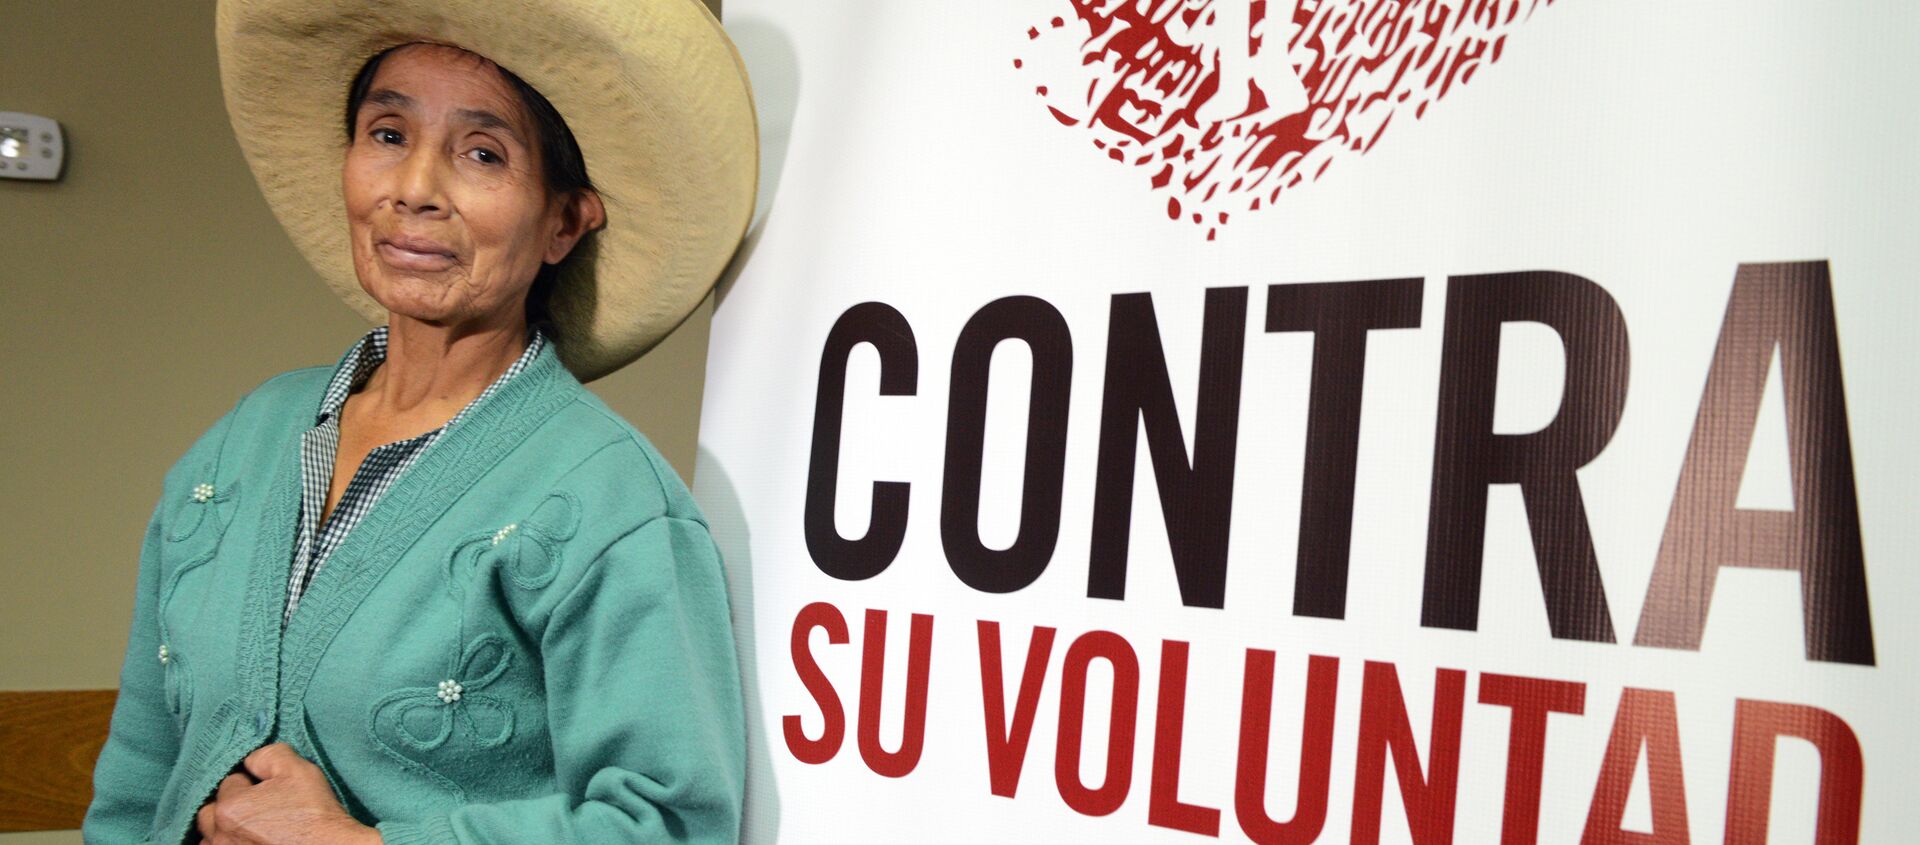 Campaña en apoyo a la creación del registro de víctimas de esterilizaciones forzadas en Perú - Sputnik Mundo, 1920, 08.06.2017